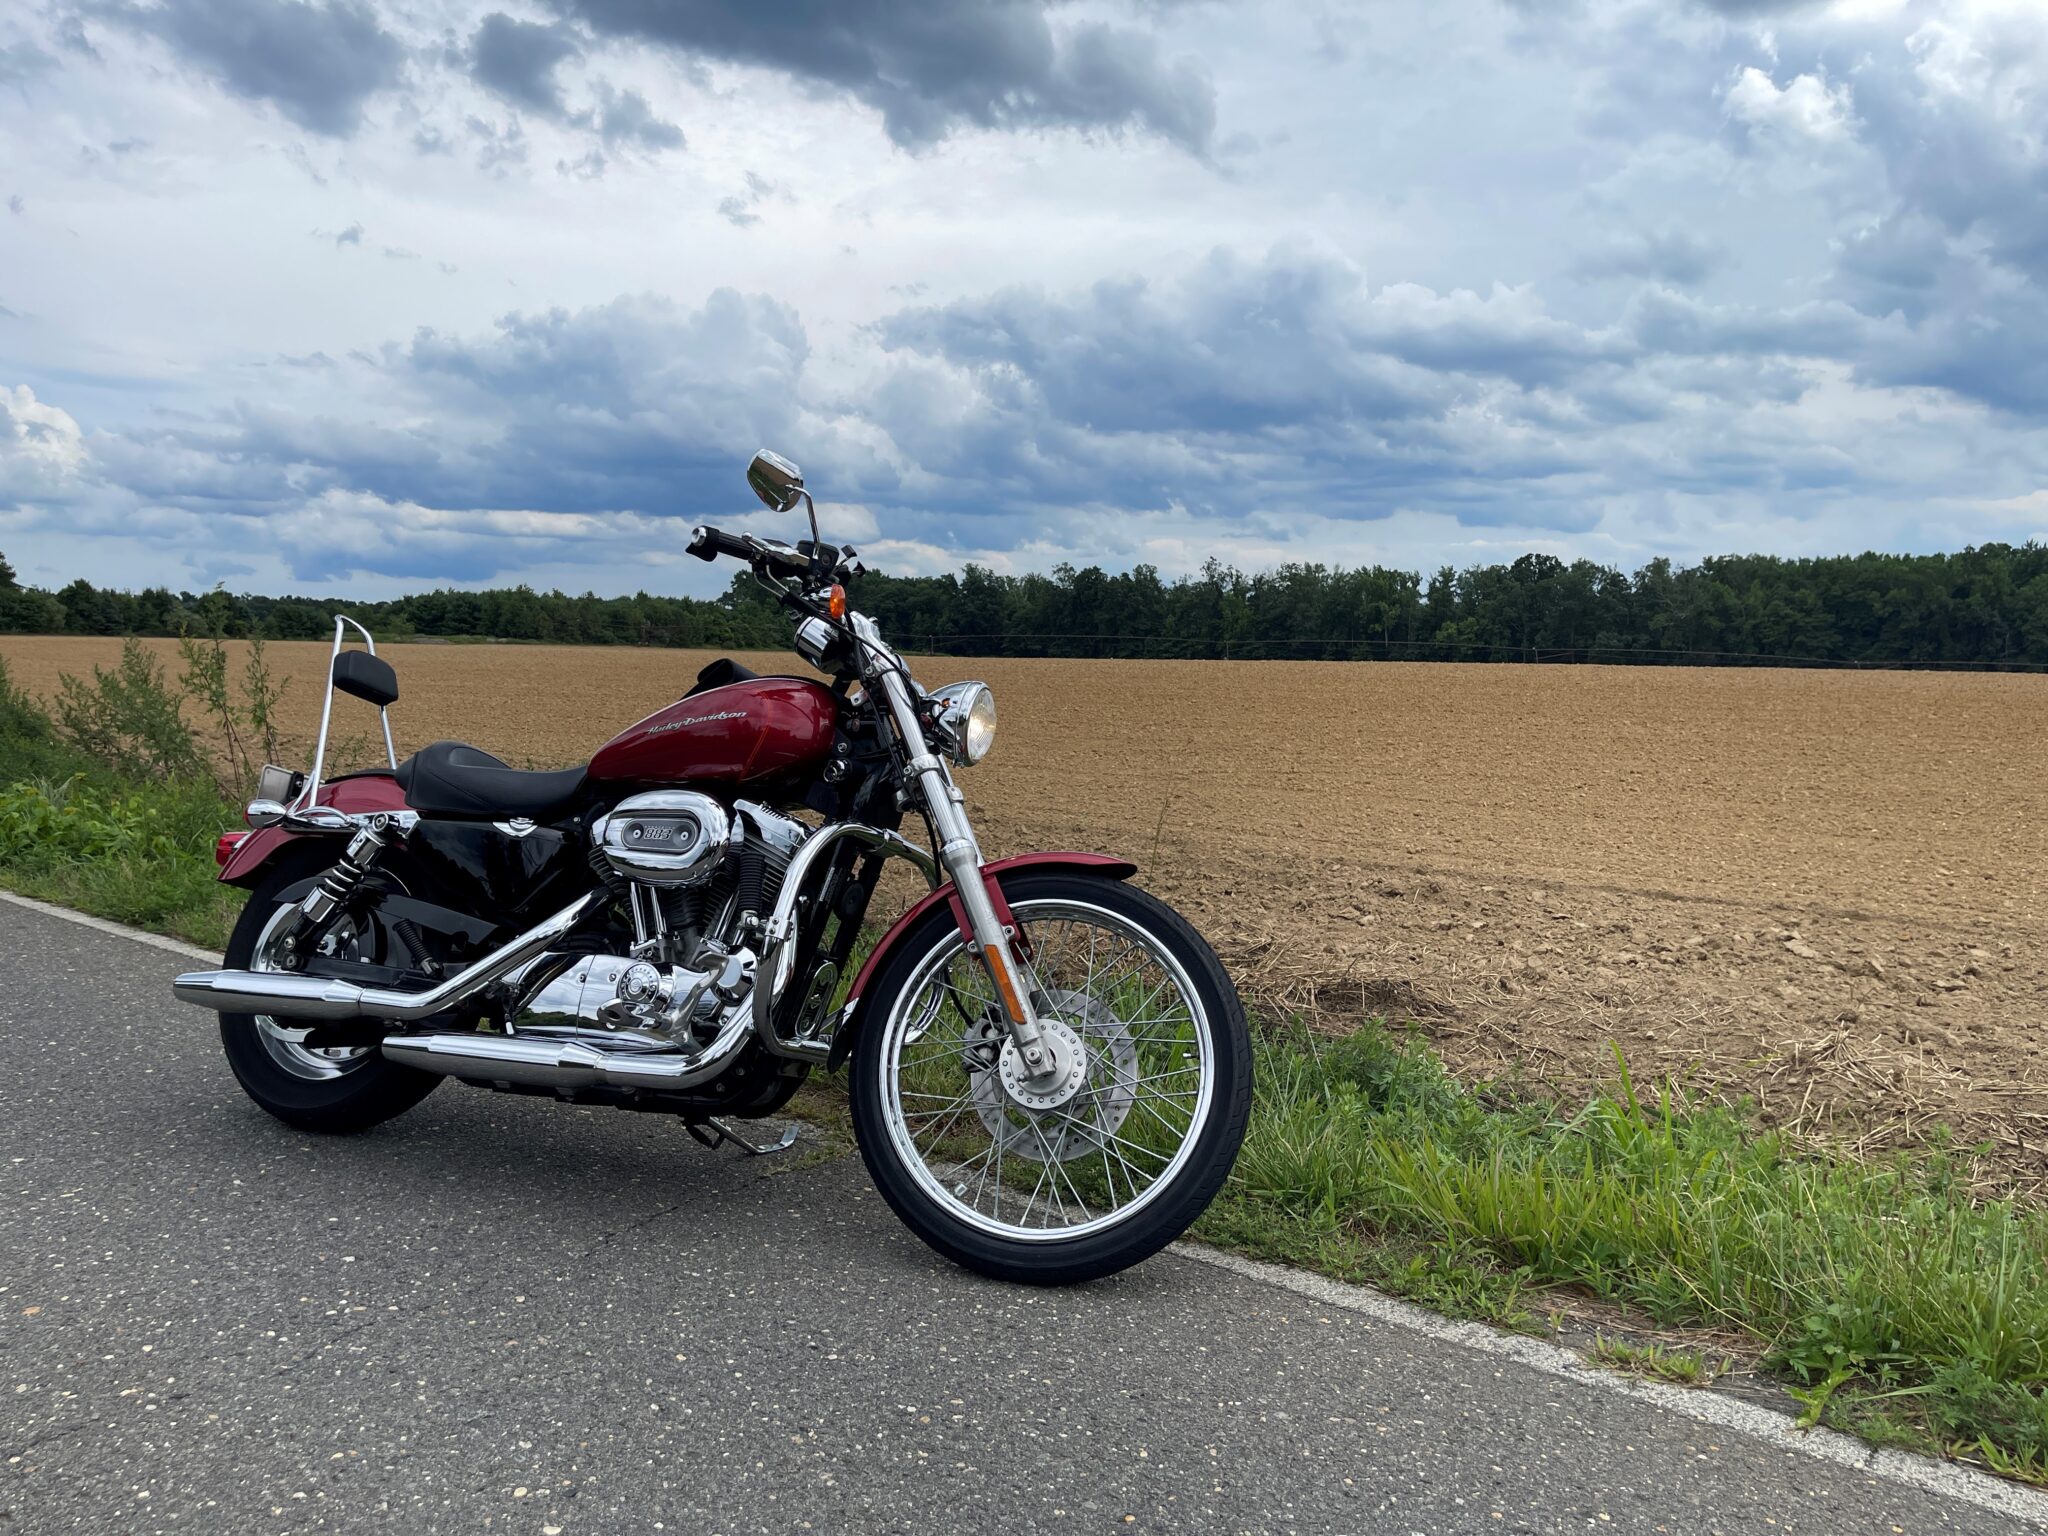 Harley Sportster ride 7-31-22 - Assunpink Lake, NJ